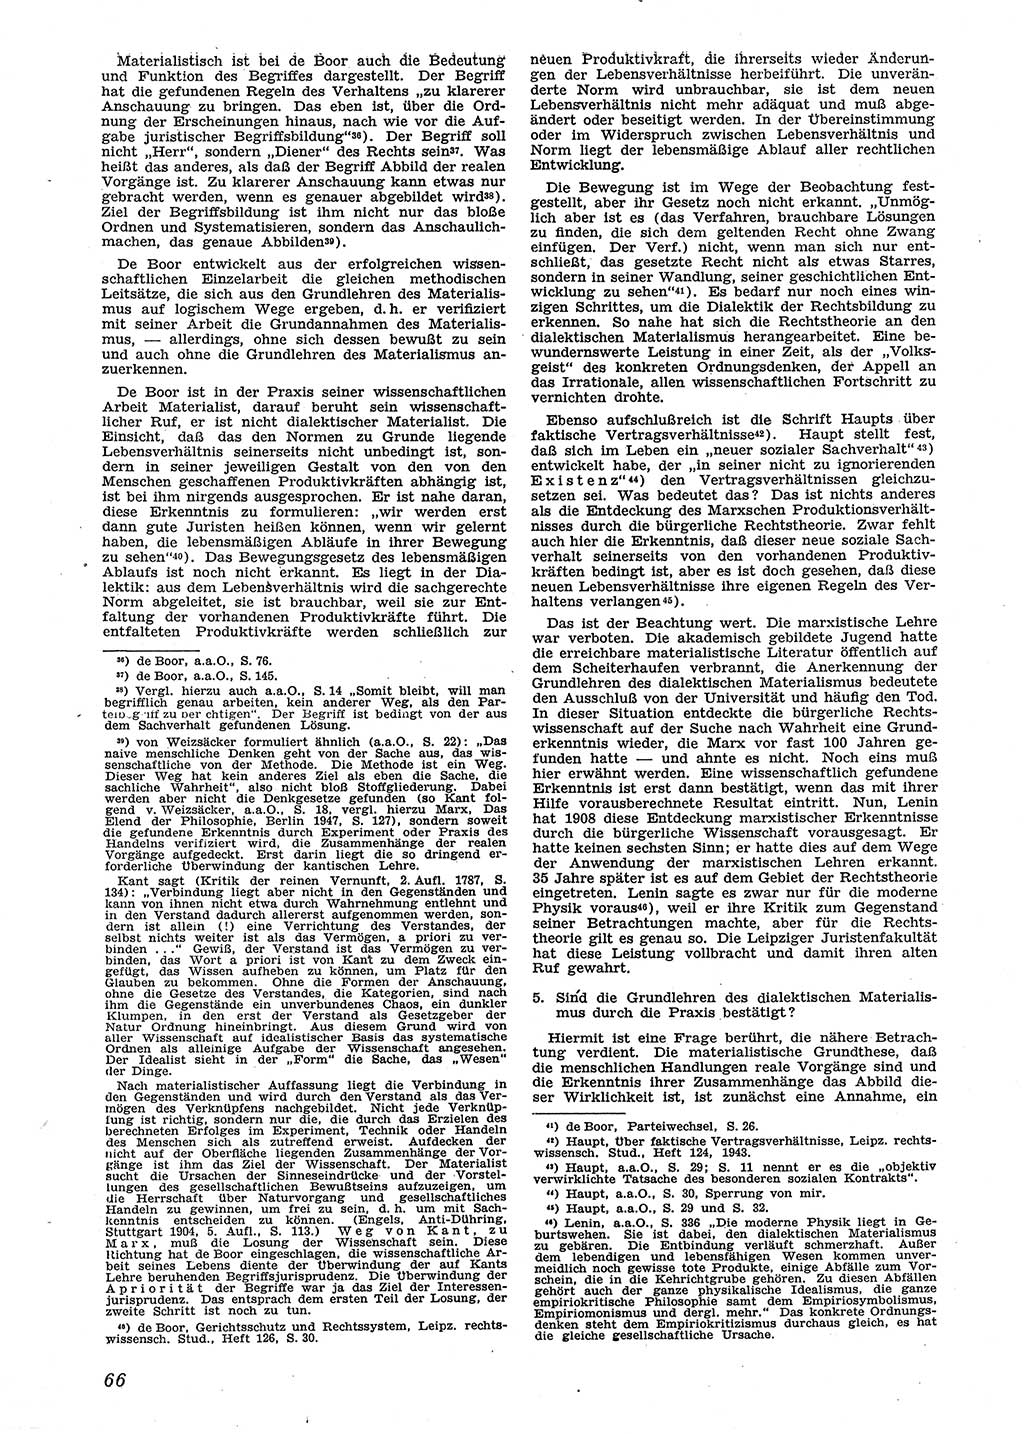 Neue Justiz (NJ), Zeitschrift für Recht und Rechtswissenschaft [Sowjetische Besatzungszone (SBZ) Deutschland], 2. Jahrgang 1948, Seite 66 (NJ SBZ Dtl. 1948, S. 66)